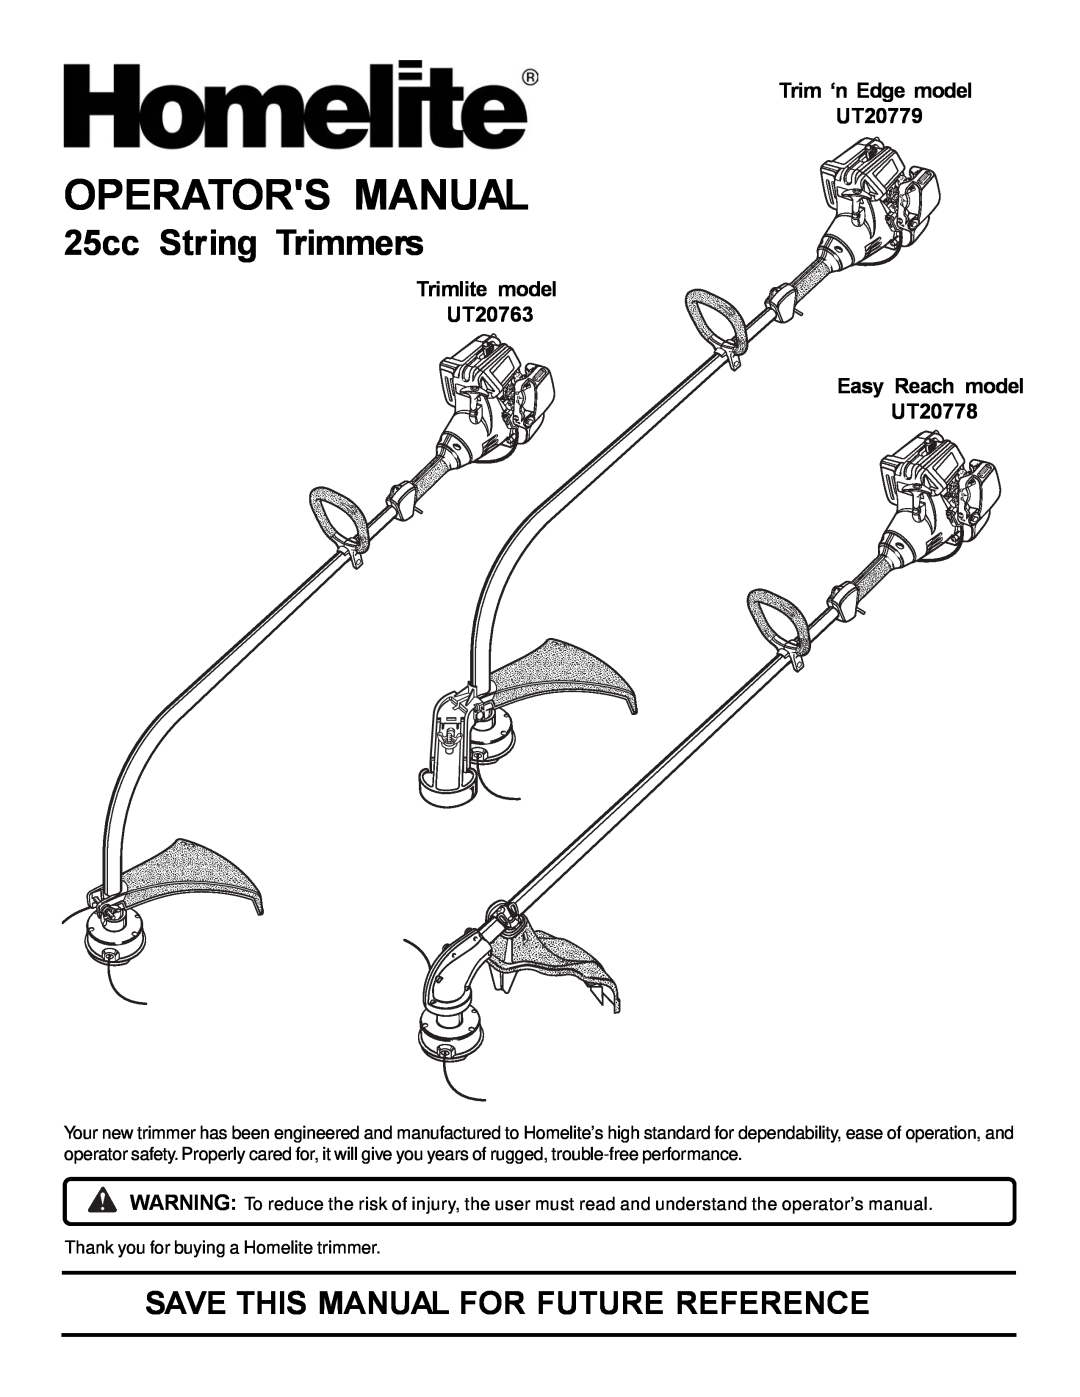 Homelite manual Operators Manual, 25cc String Trimmers, Trimlite model UT20763, Trim ‘n Edge model UT20779 